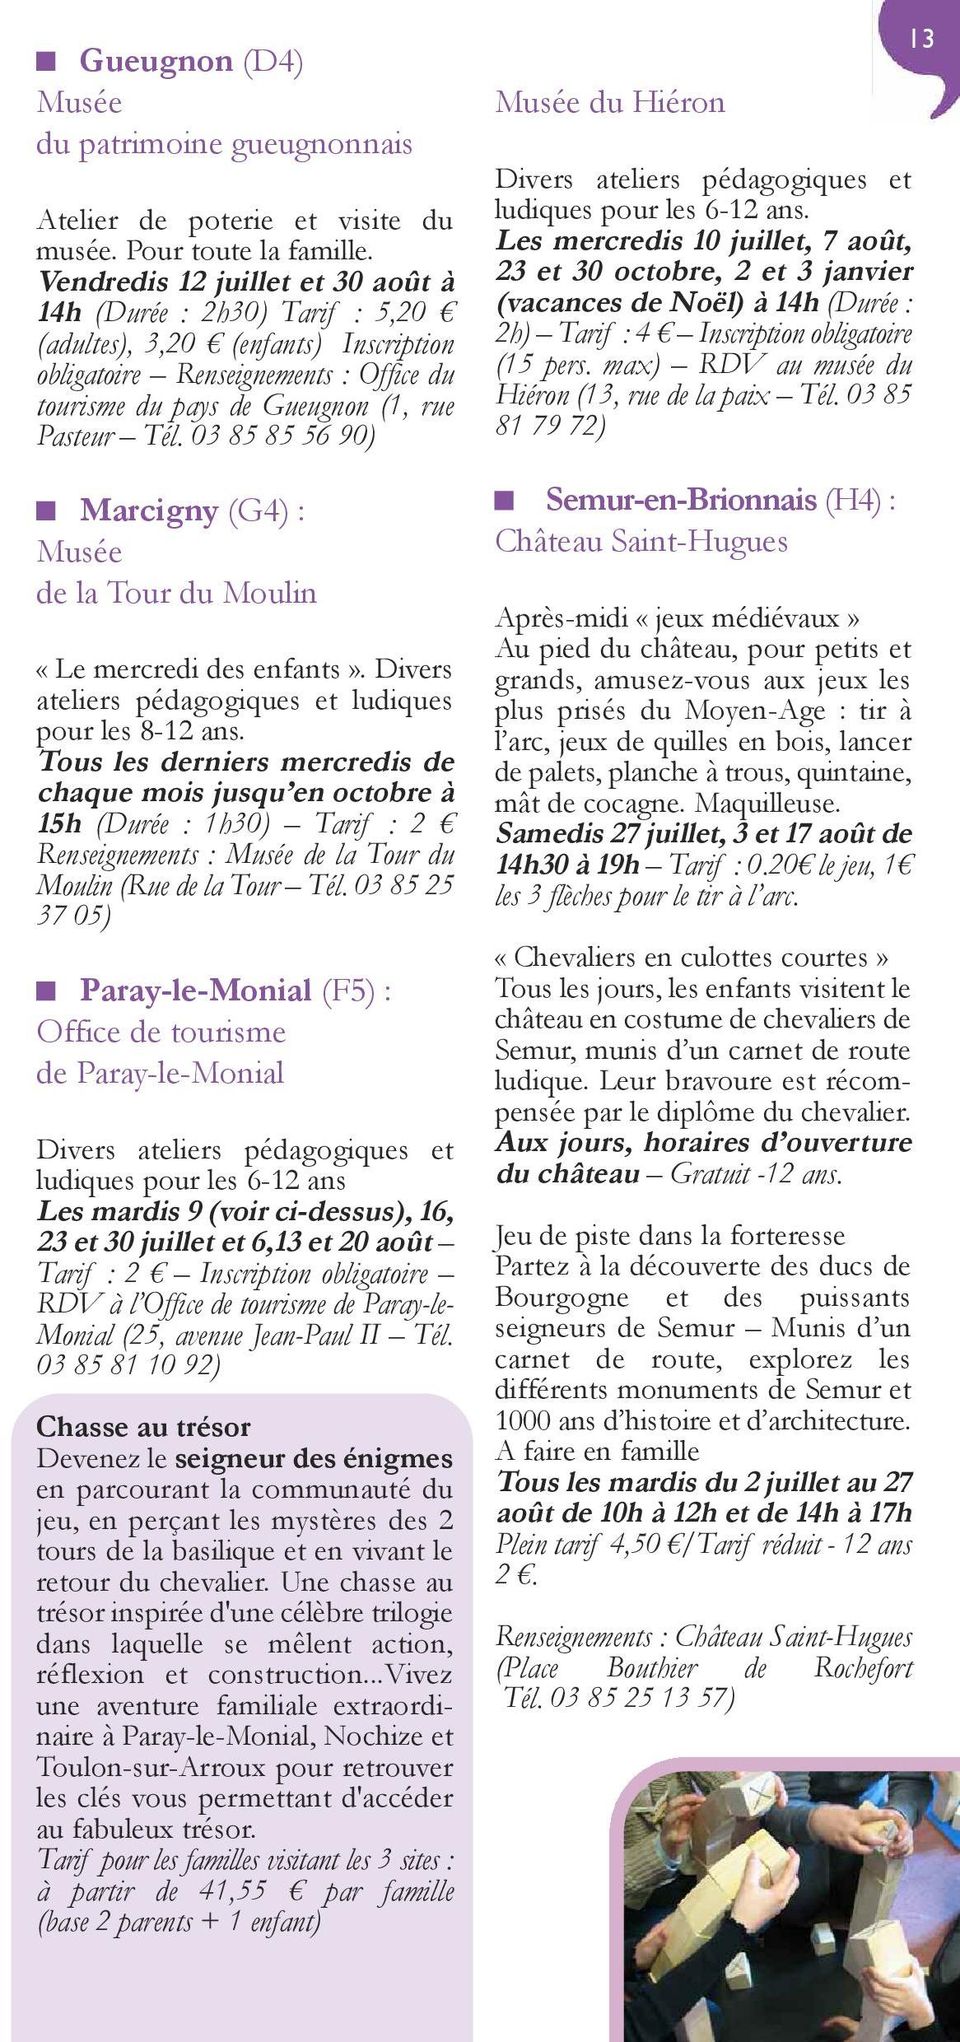 03 85 85 56 90) Marcigny (G4) : Musée de la Tour du Moulin «Le mercredi des enfants». Divers ateliers pédagogiques et ludiques pour les 8-12 ans.